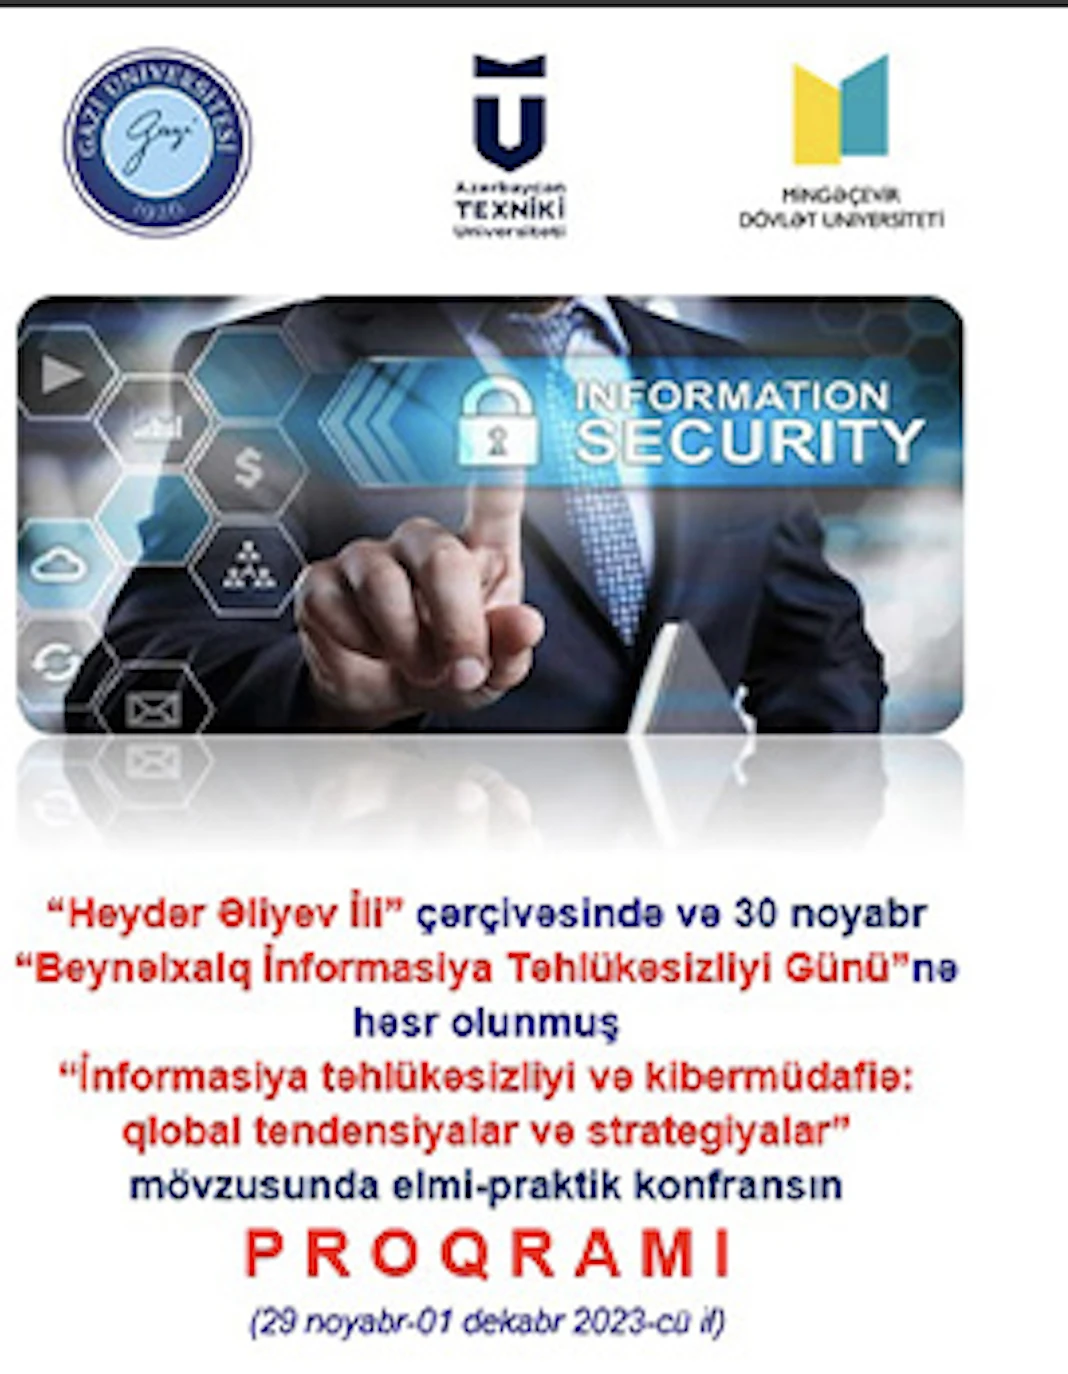 MSU, AZTU and Turkiye’s Gazi University jointly organized a cybersecurity conference